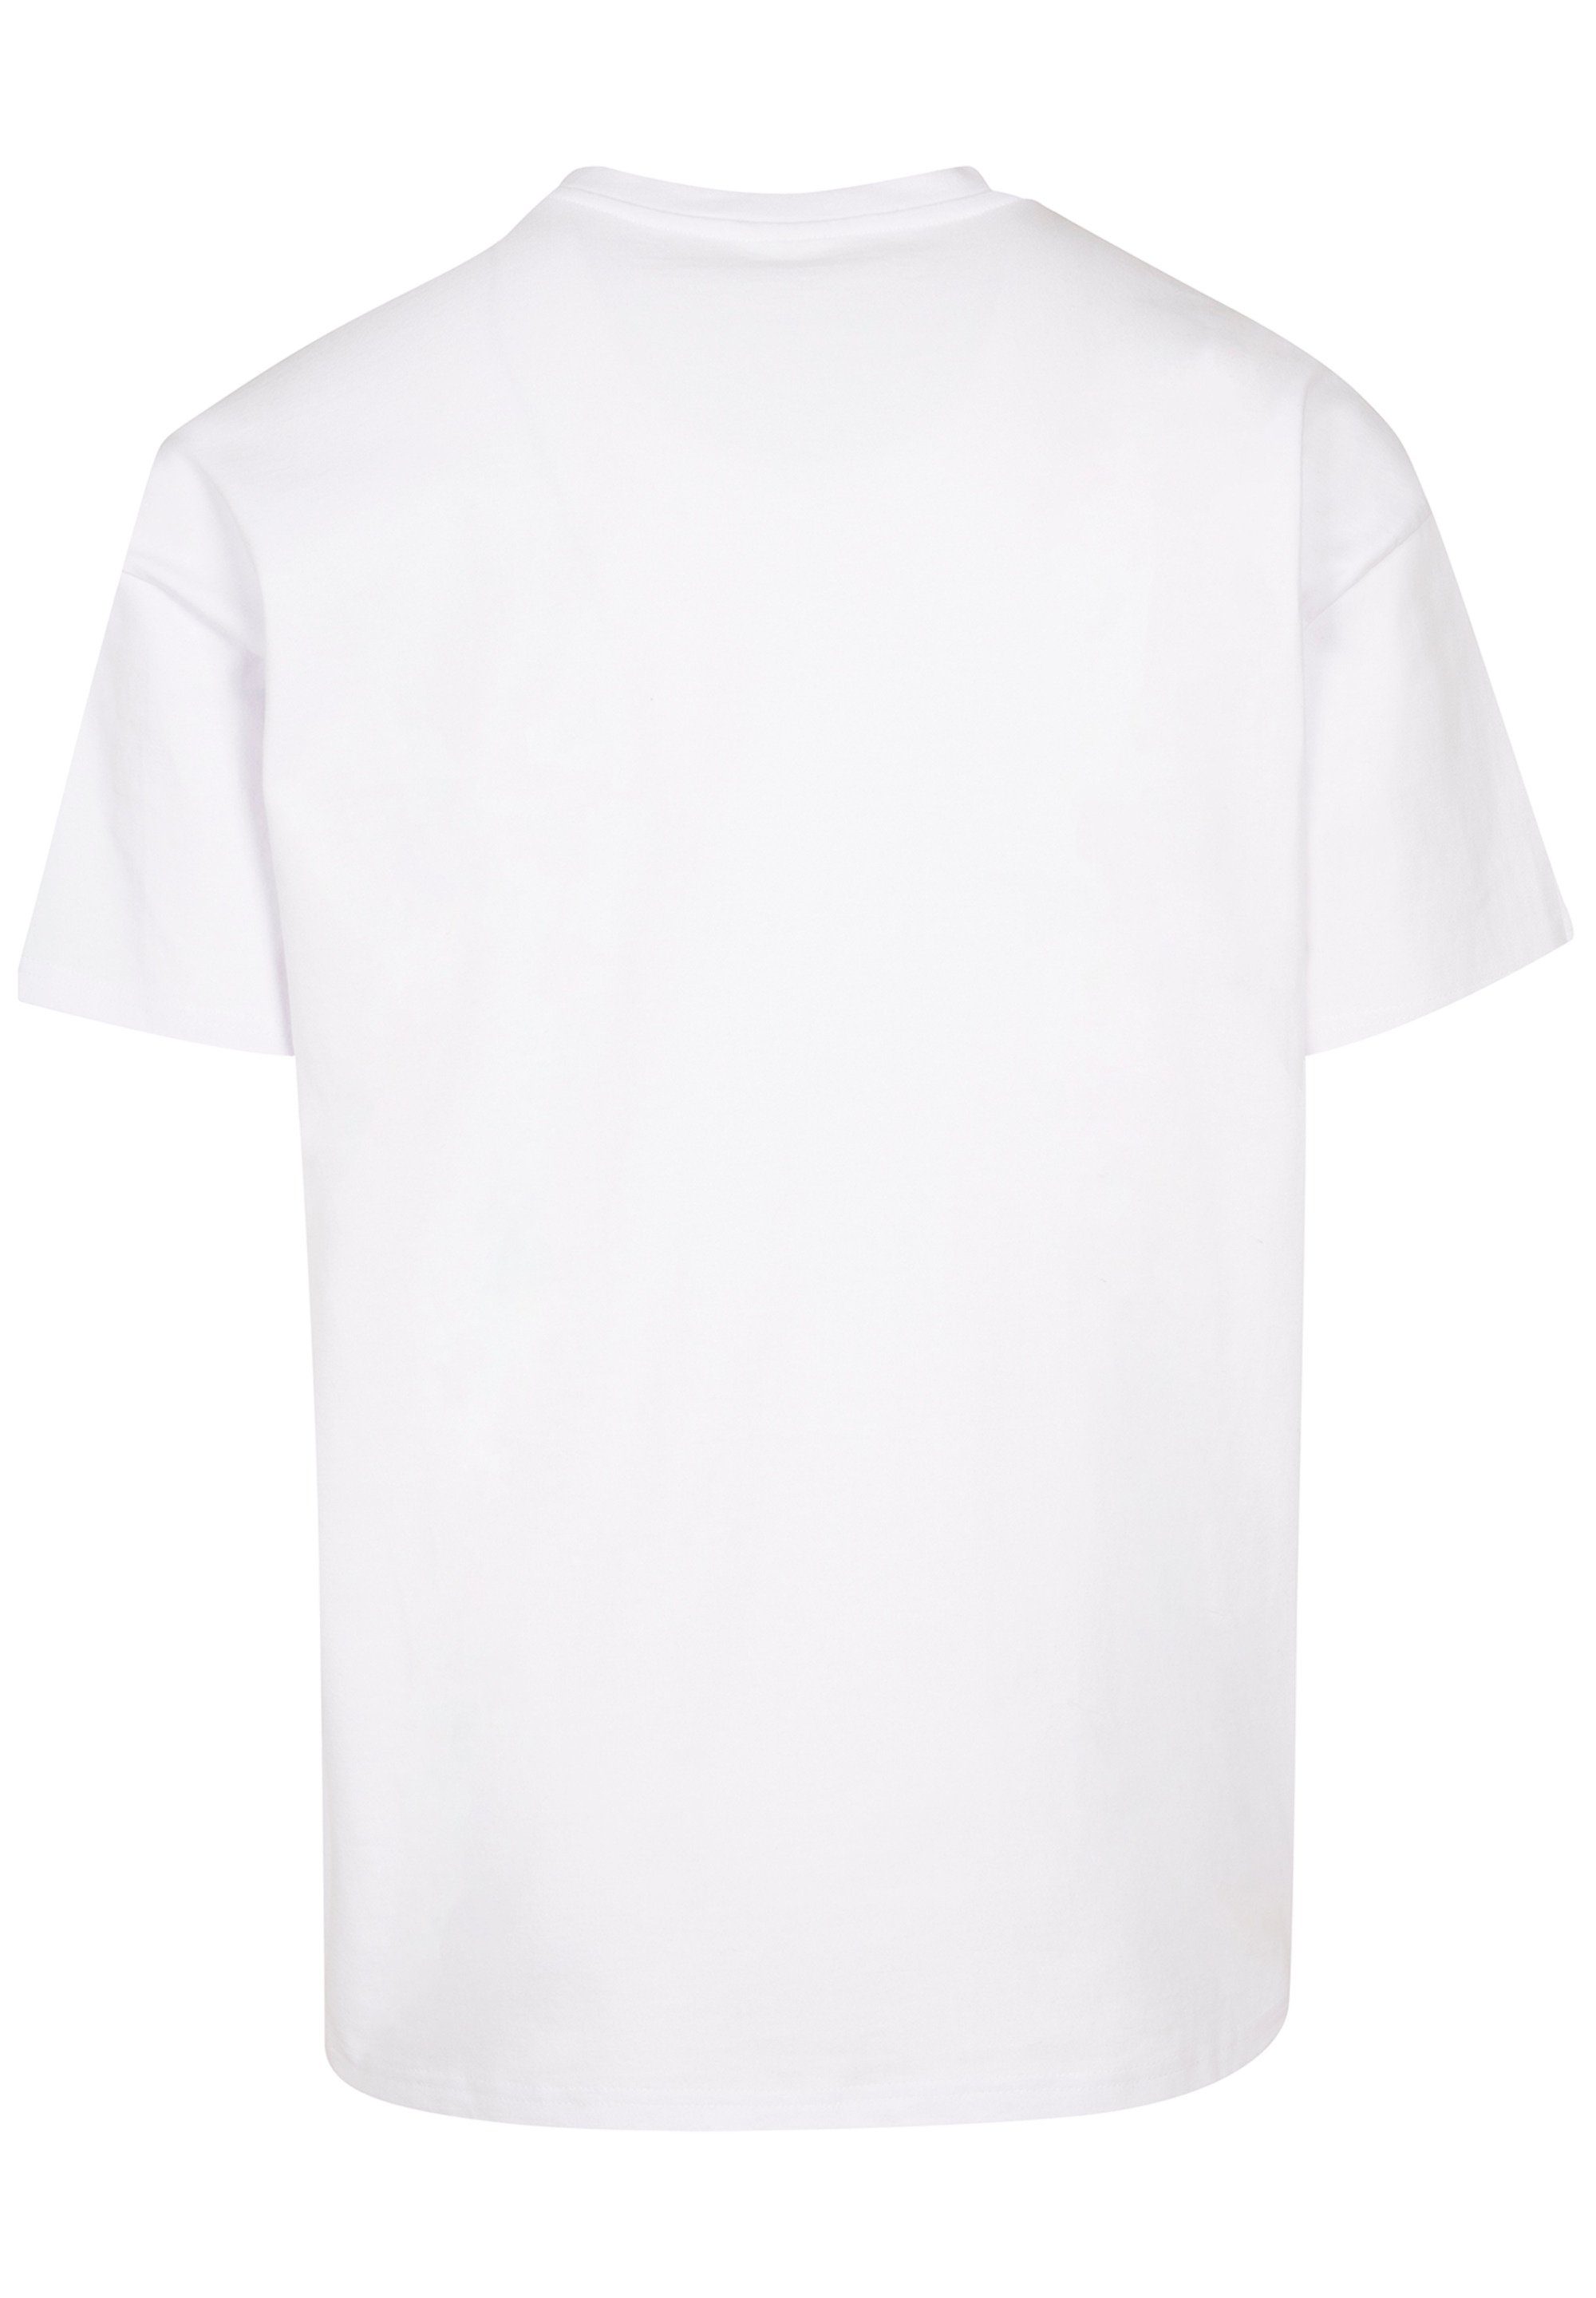 F4NT4STIC T-Shirt Harlem OVERSIZE Print TEE weiß